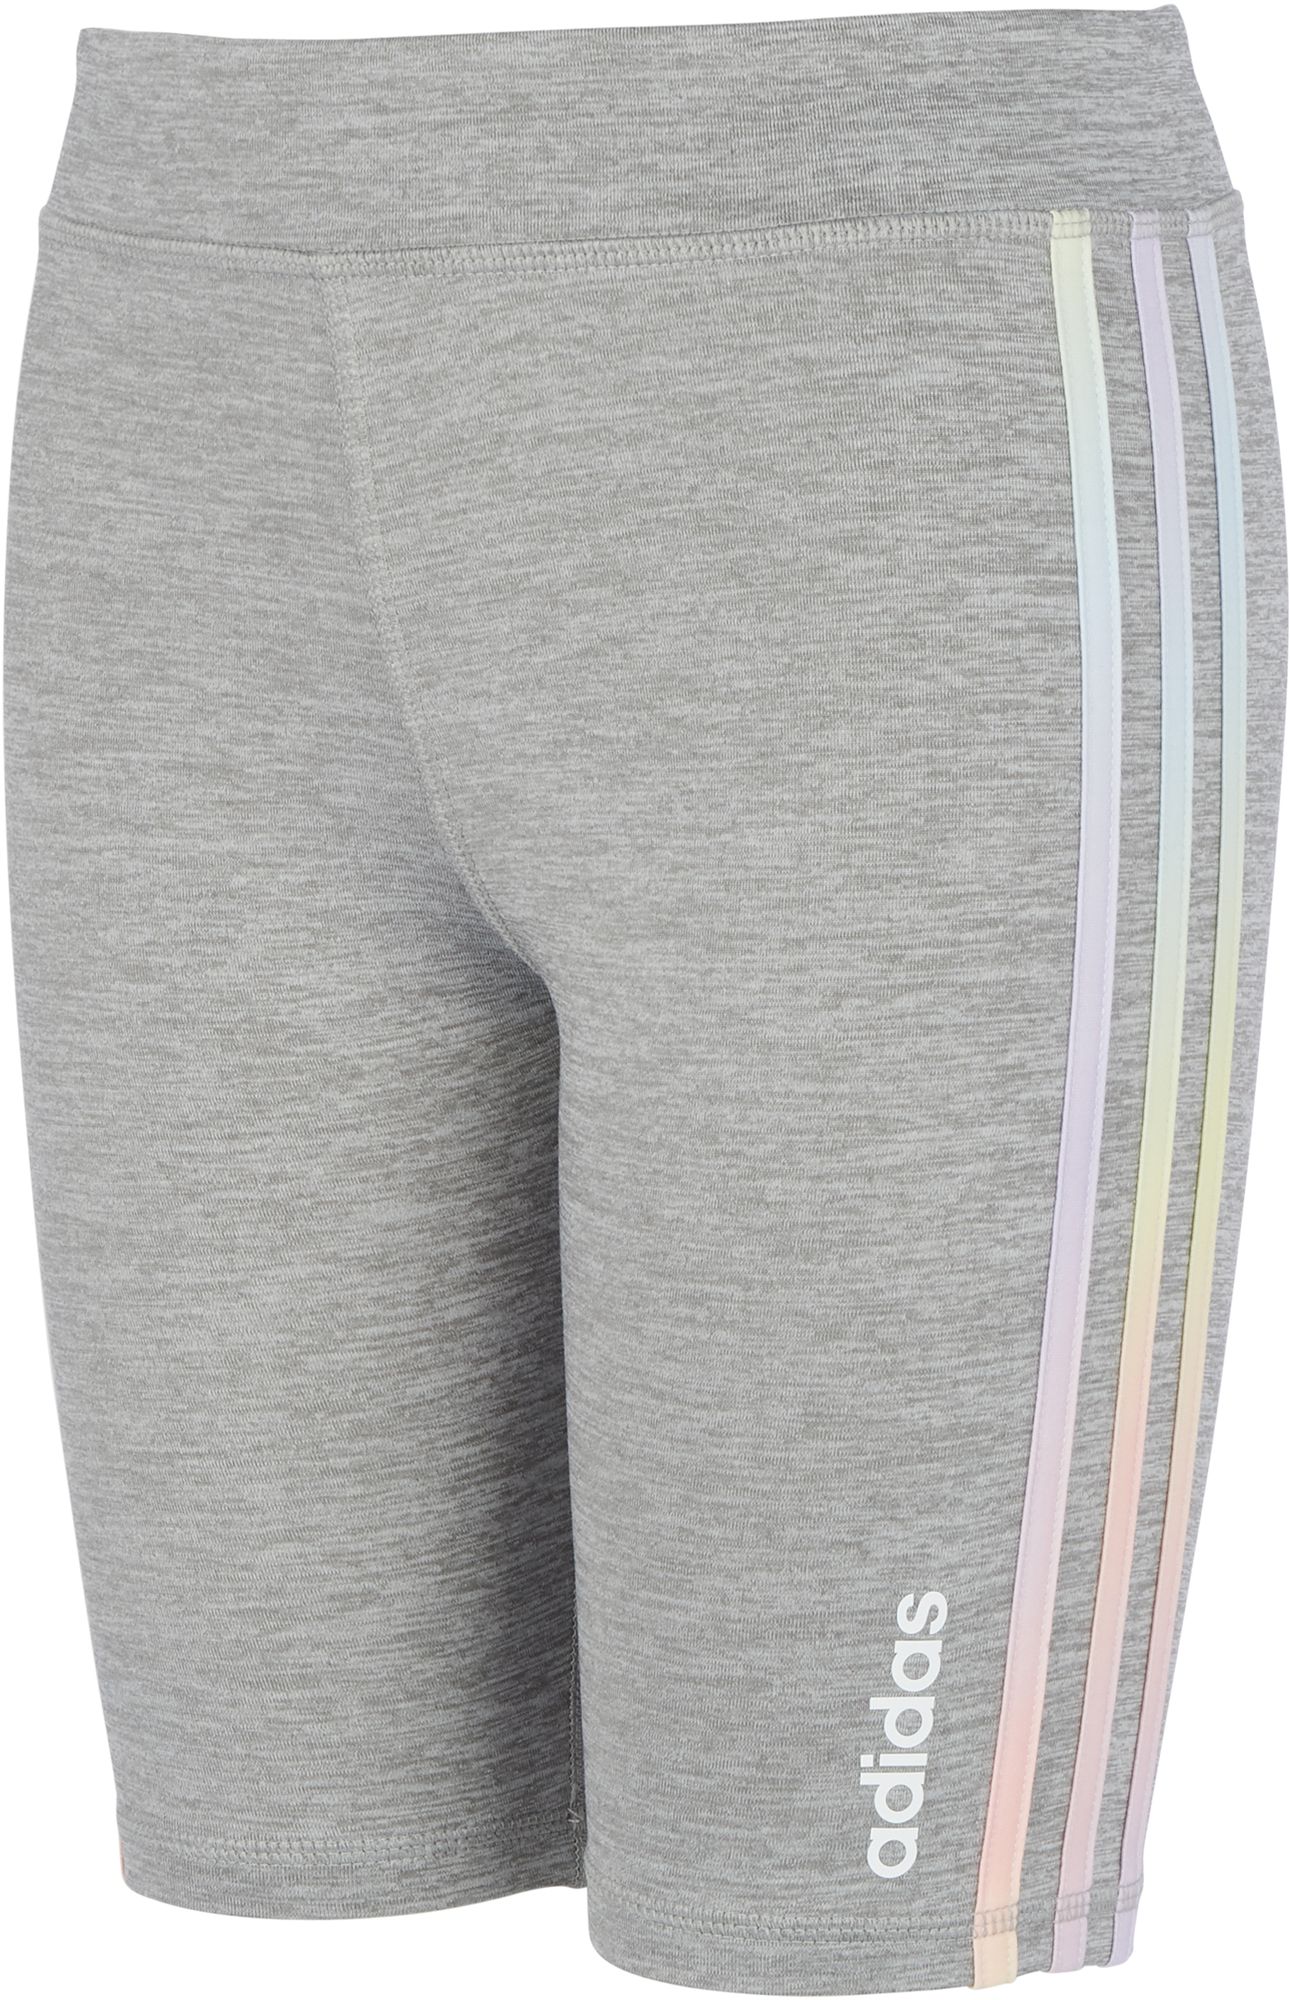 grey adidas cycle shorts